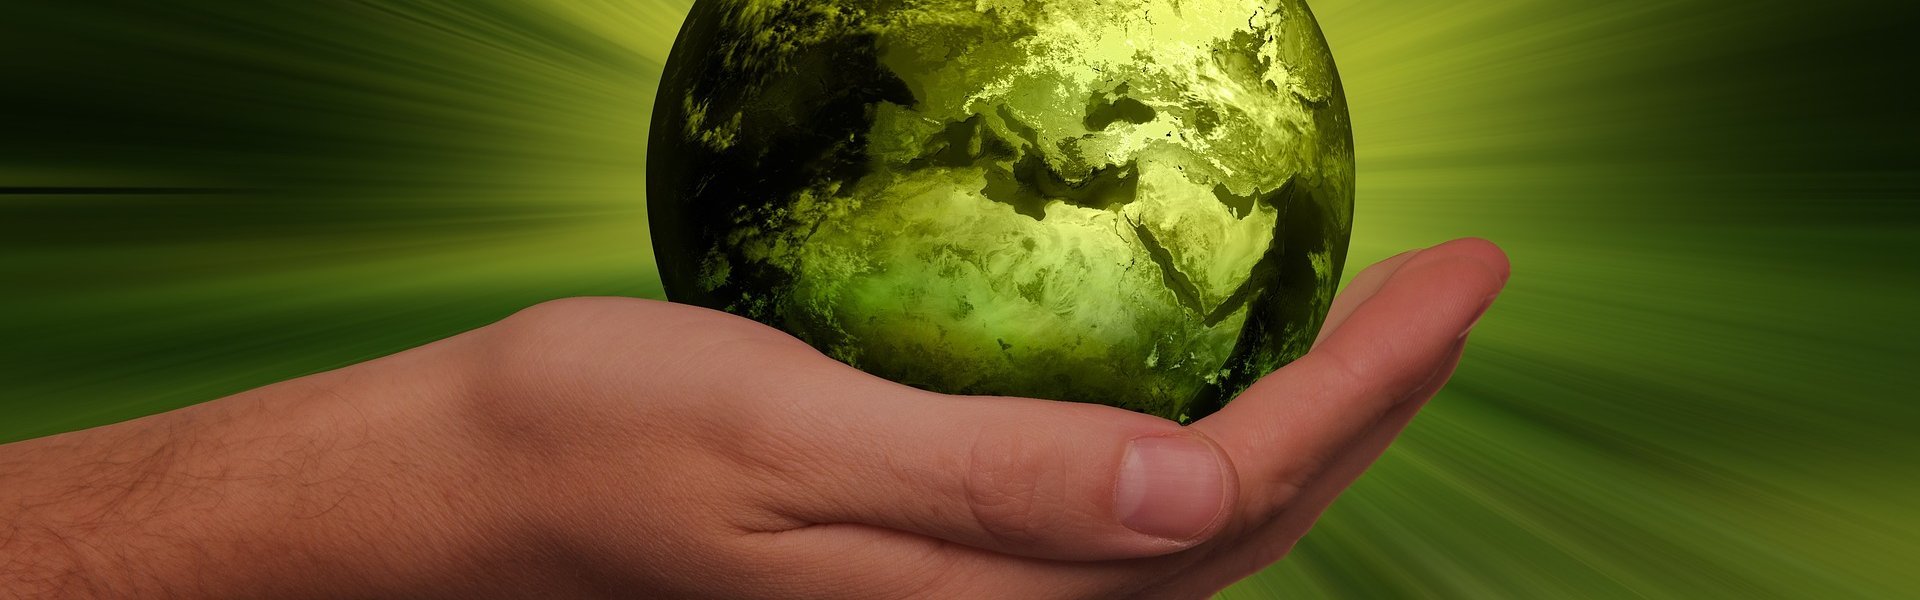 Das Bild zeigt eine Hand auf der eine grün eingefärbte Erdkugel liegt.